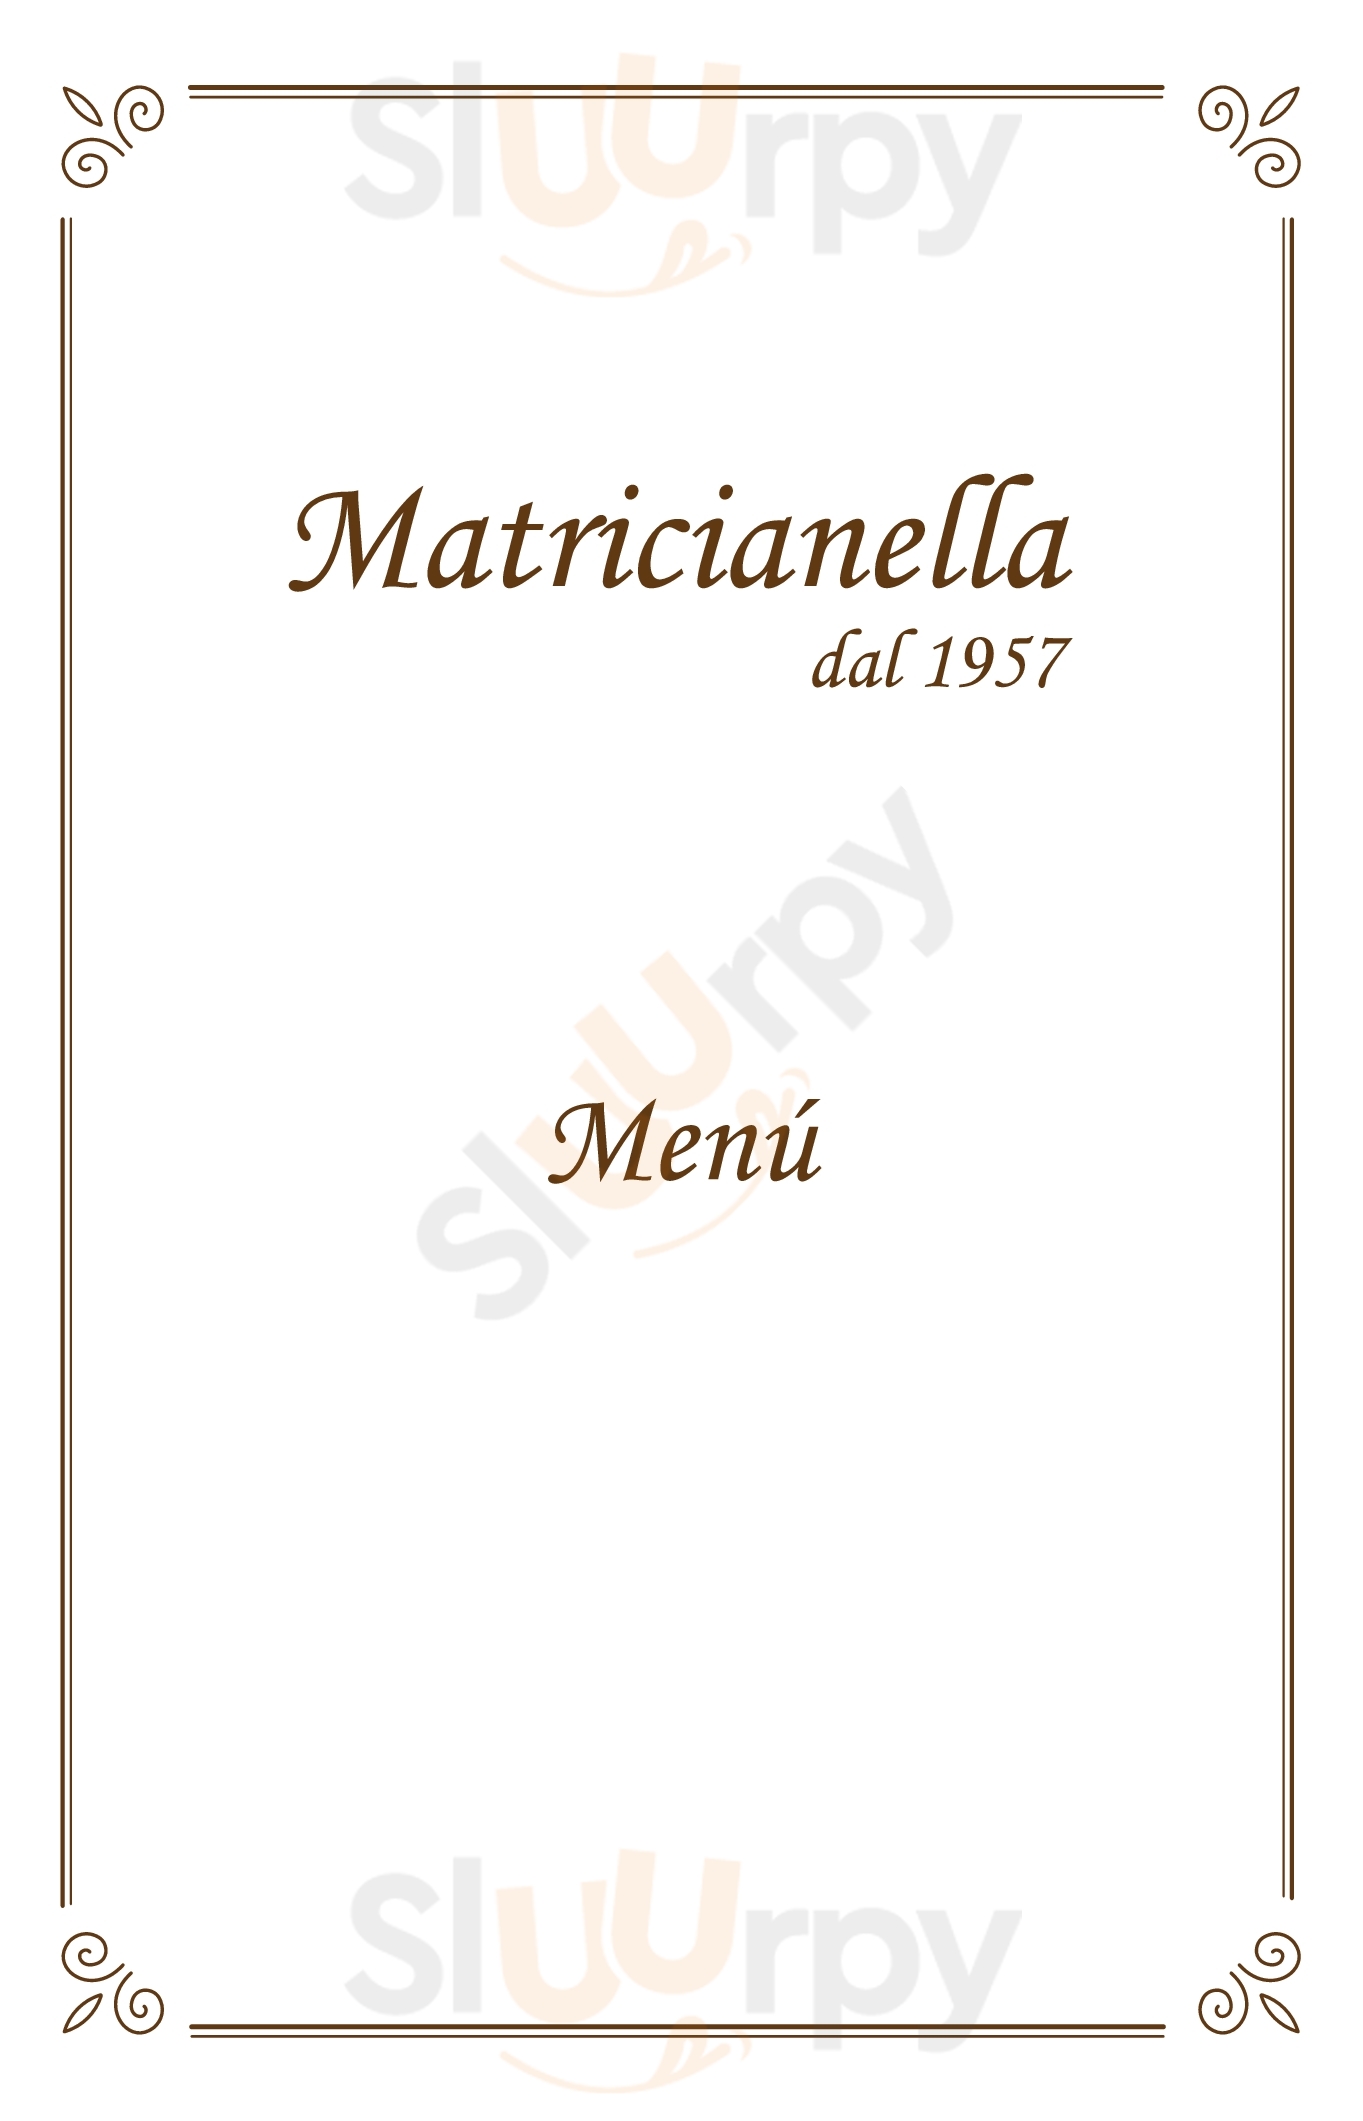 Matricianella Roma menù 1 pagina